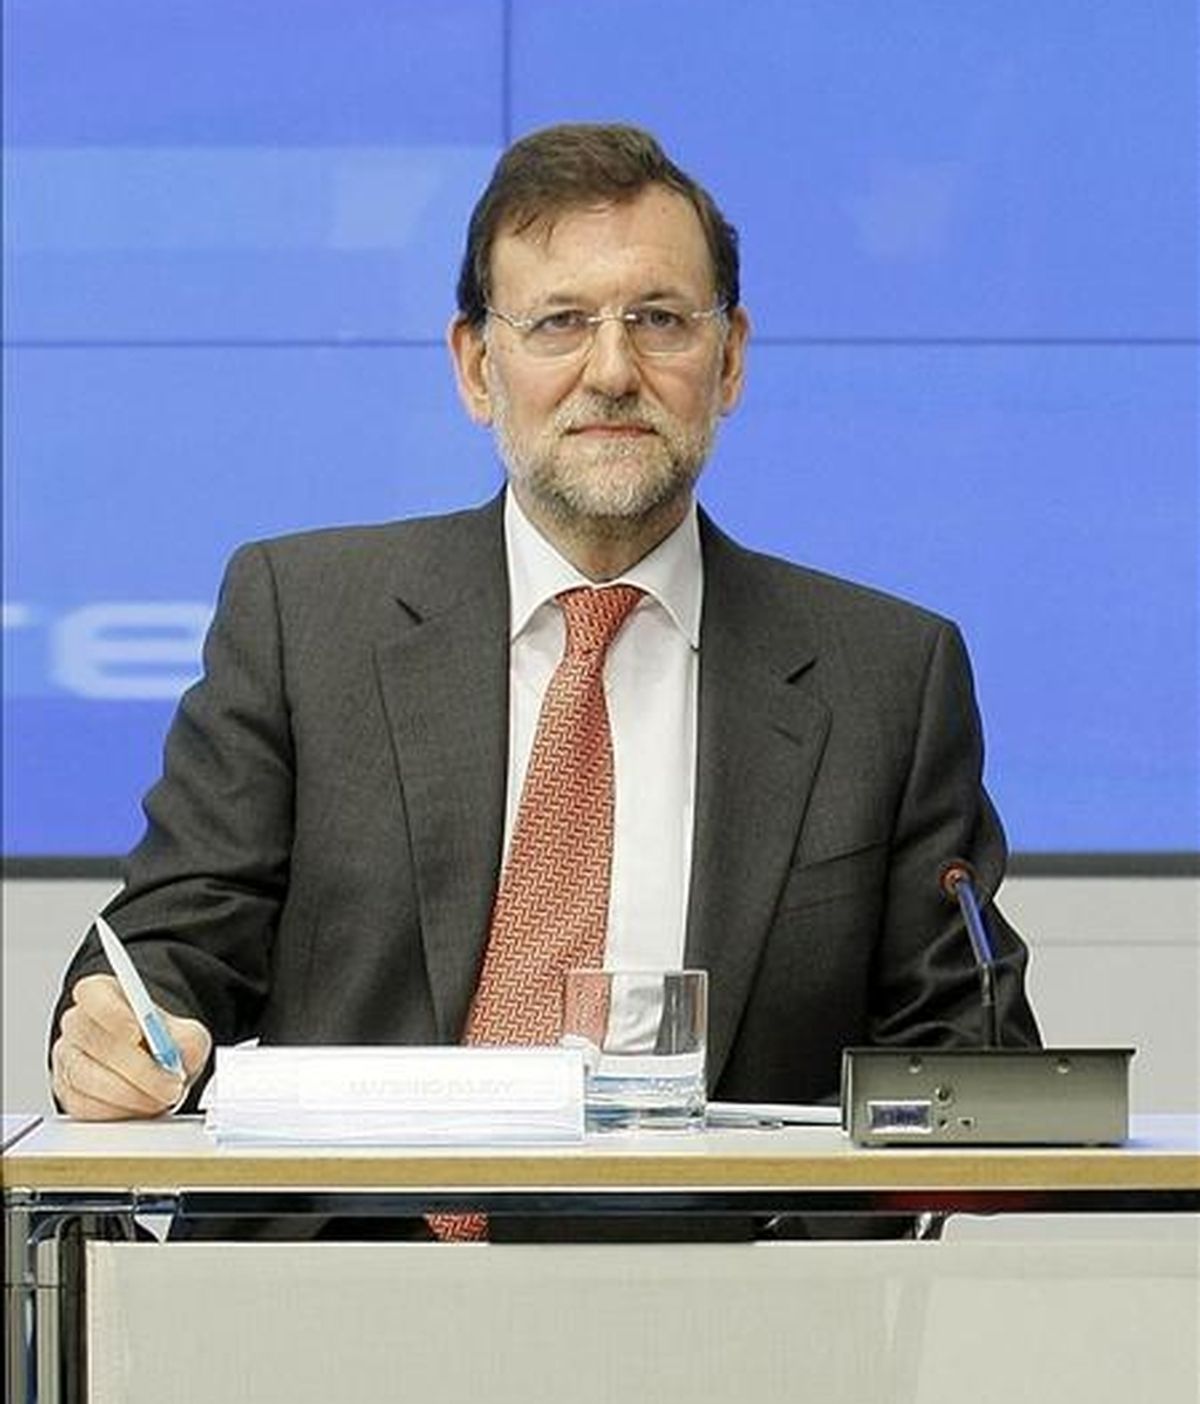 El presidente del Partido Popular, Mariano Rajoy, ha dicho hoy que está "absolutamente seguro" de que la presidenta de la Comunidad de Madrid, Esperanza Aguirre, va a demostrar su verdad, tras autorizar una comisión de investigación sobre una supuesta trama de espionaje en la Comunidad. EFE/archivo